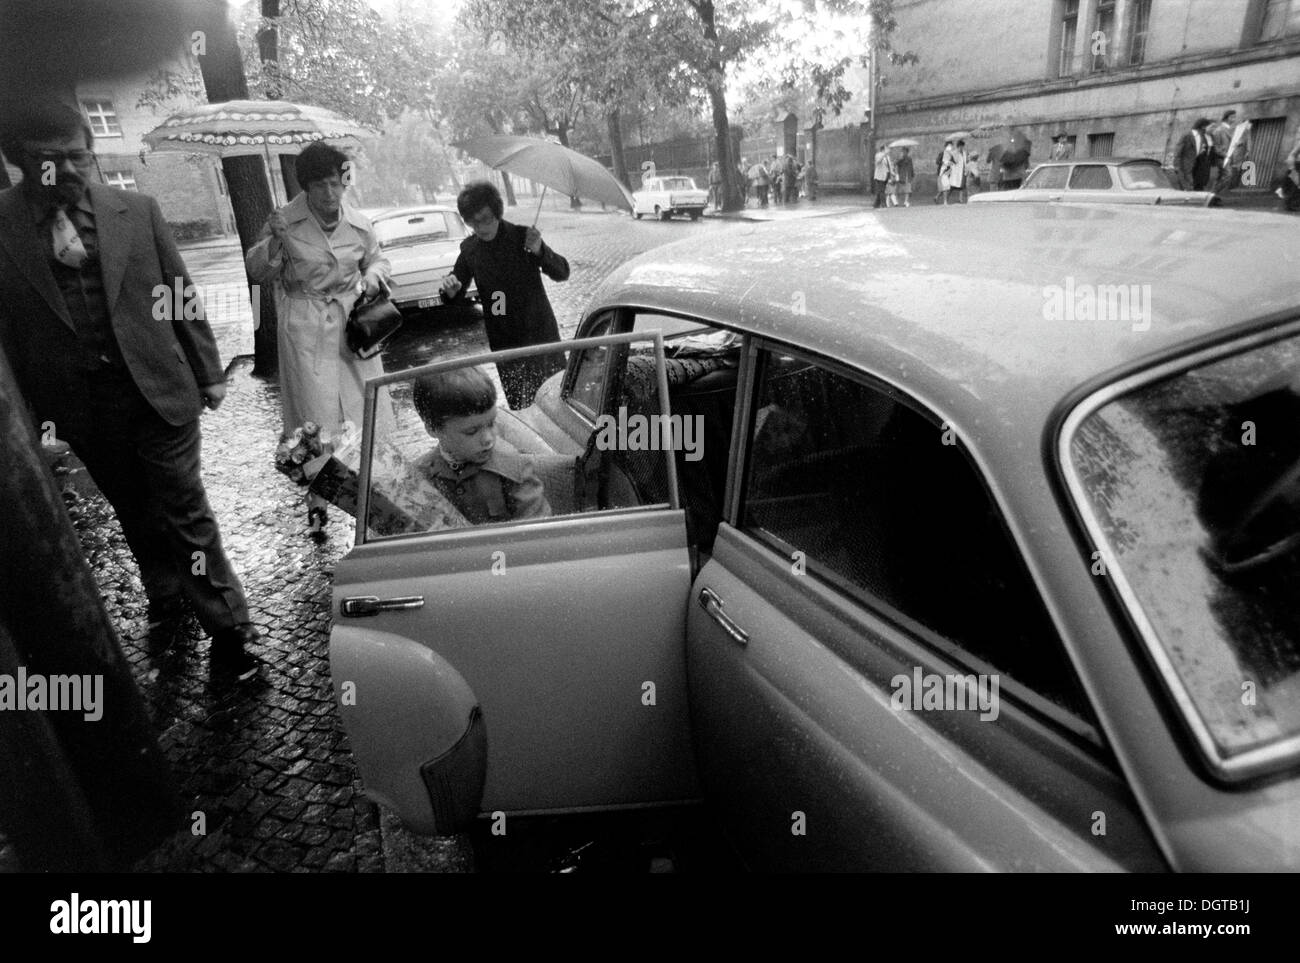 Enfant avec un cône de l'école d'entrer dans une voiture 311 Wartburg, Leipzig, Allemagne de l'est photographie historique autour de 1978 Banque D'Images